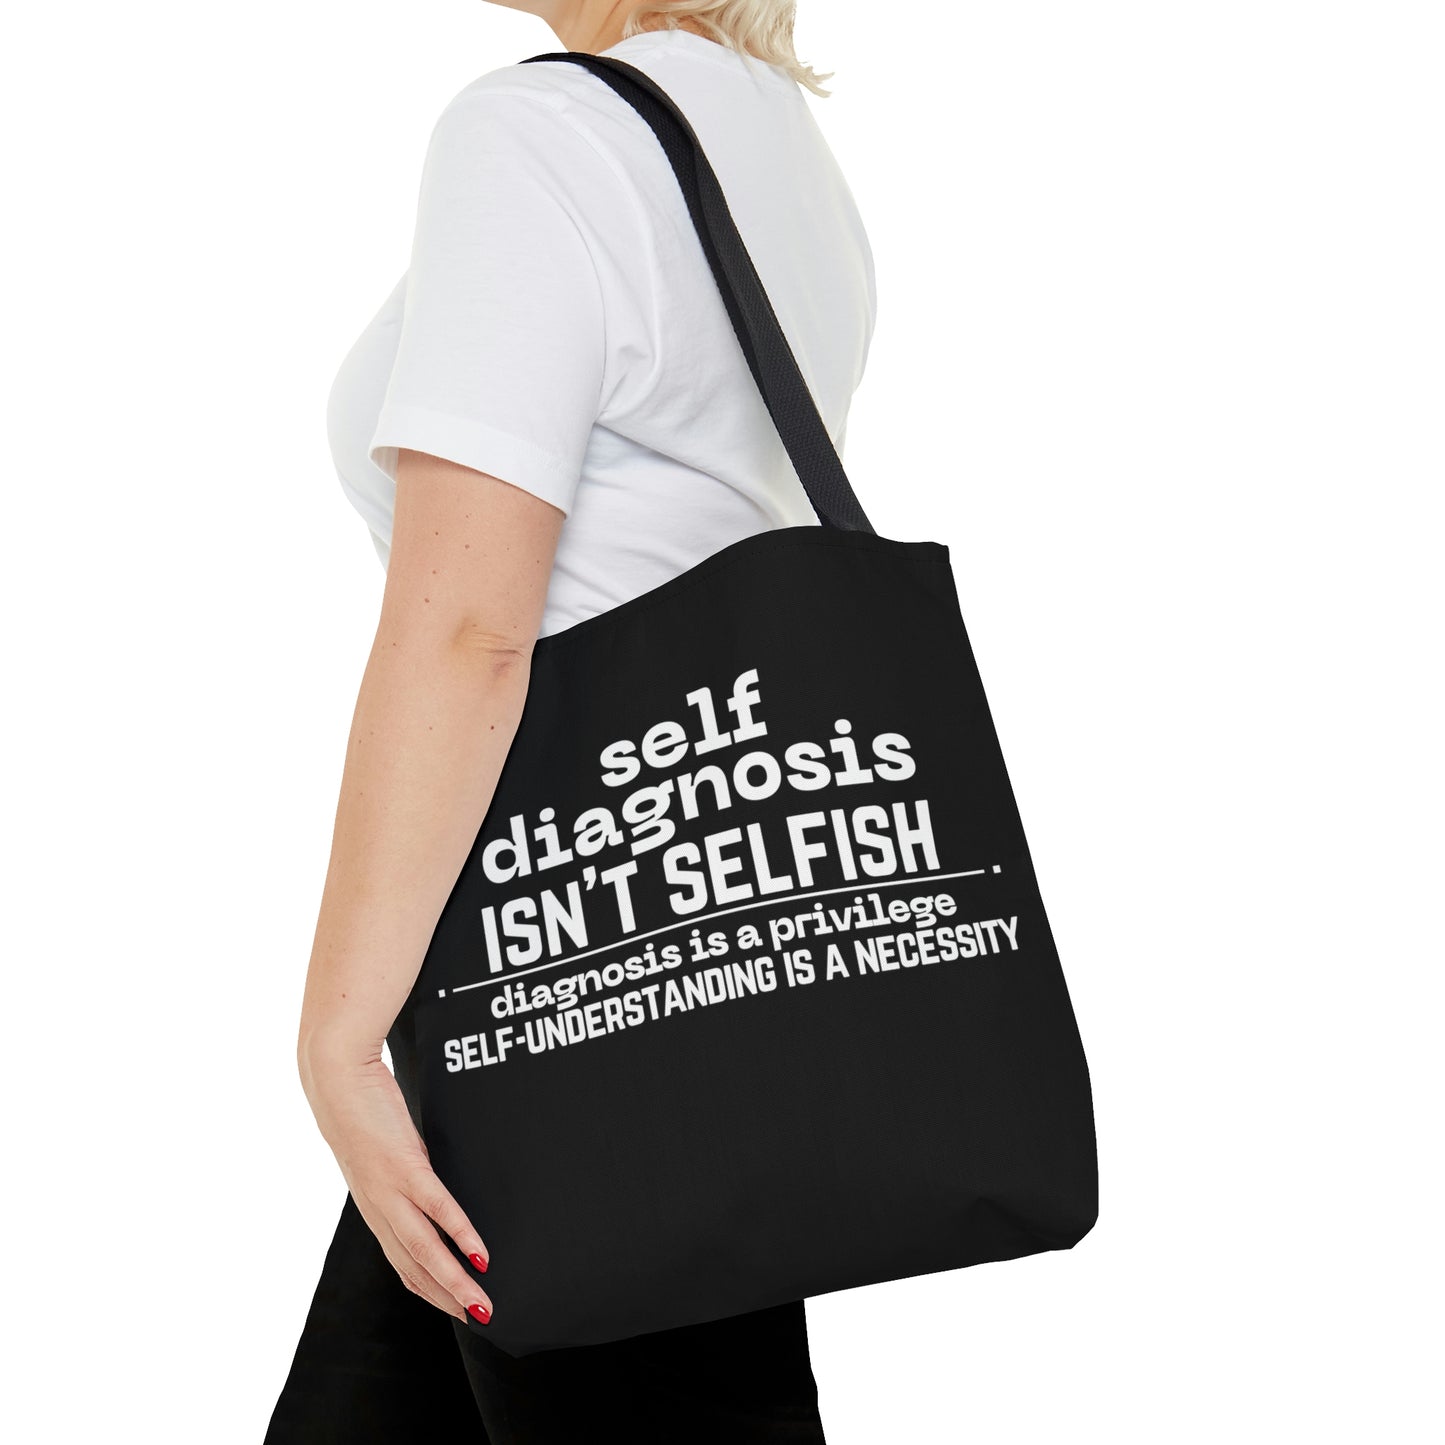 "Self Diagnosis Isn't Selfish" Tote Bag in 3 sizes